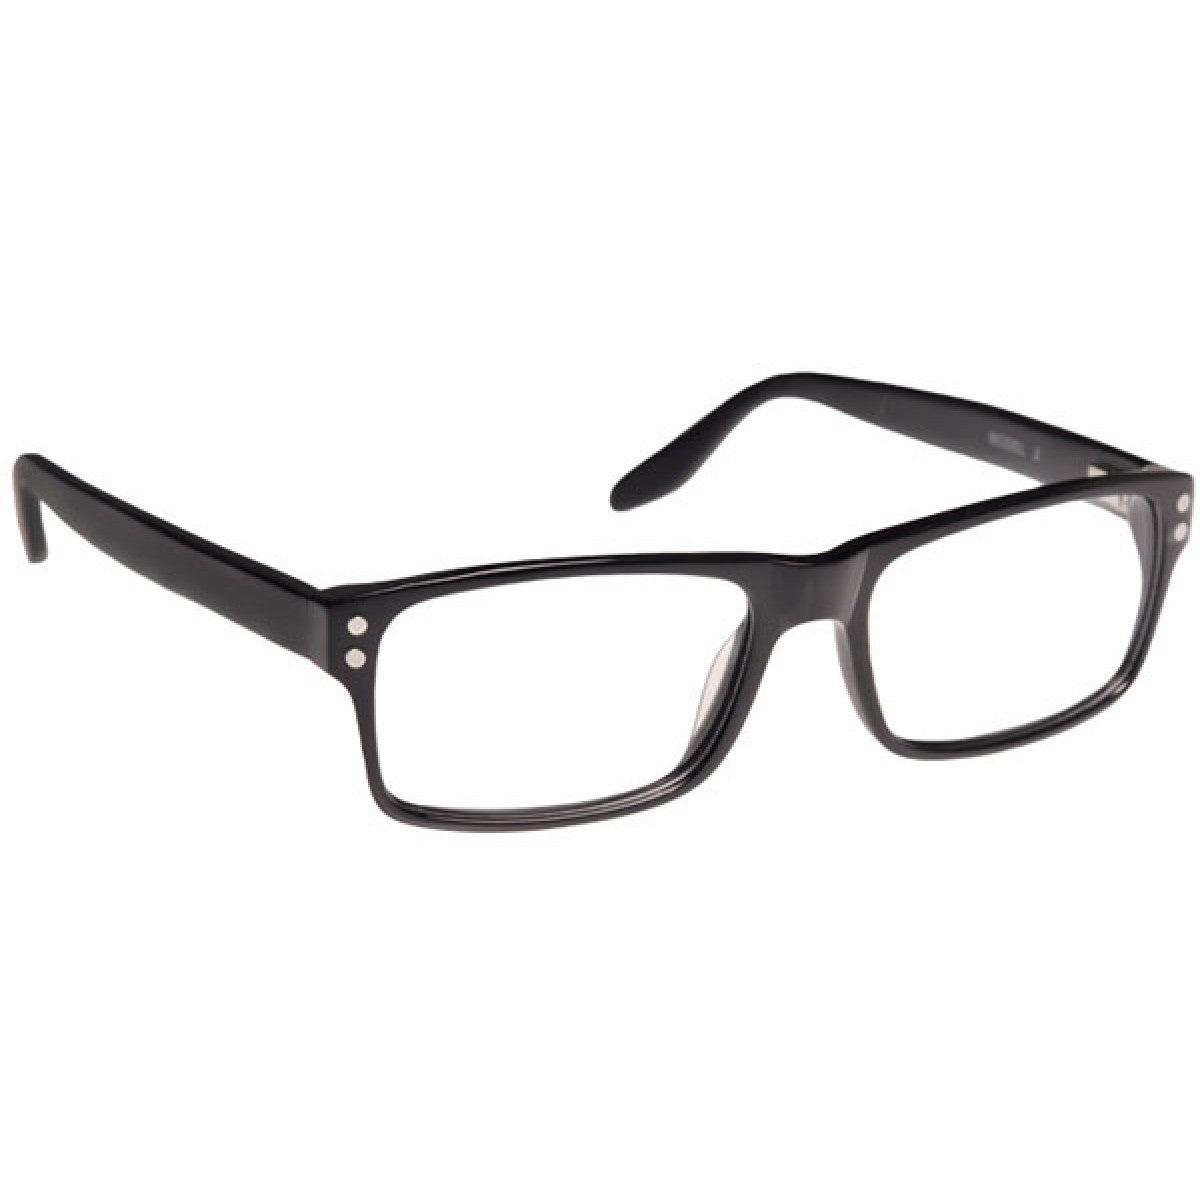 Armourx Prescription Safety Eyeglasses 7001 - Go-Readers.com